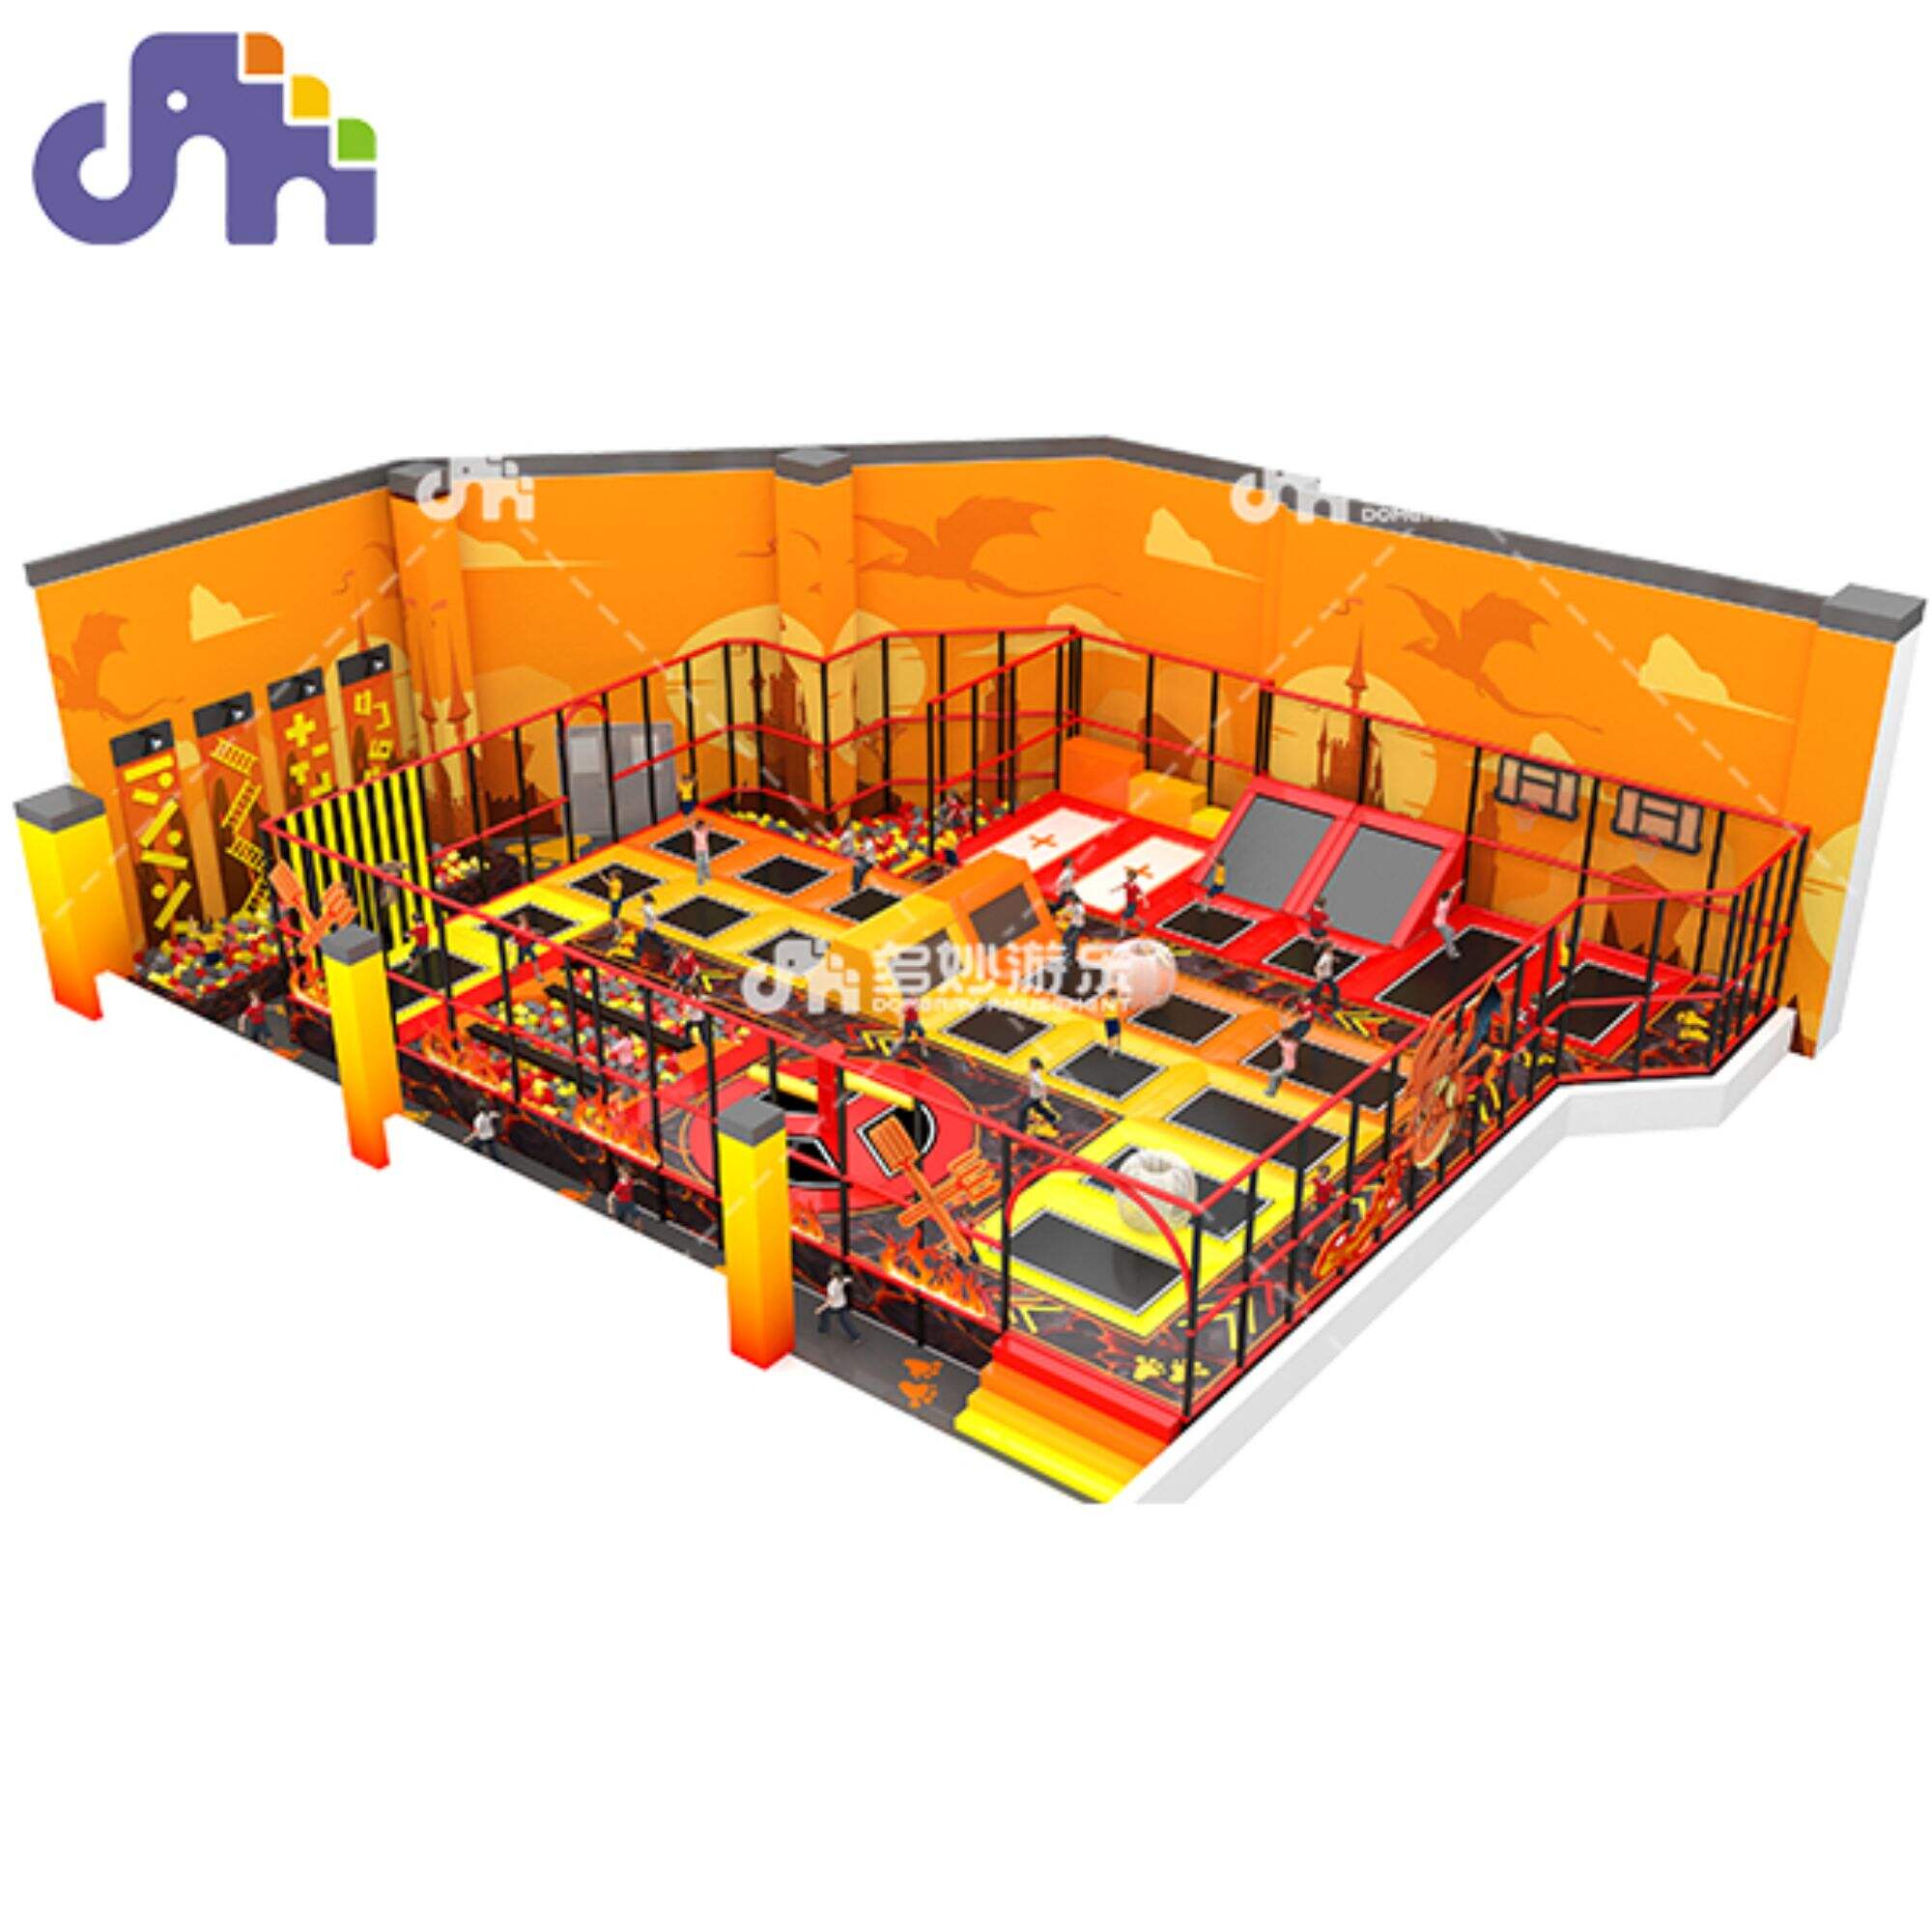 Մանկական փակ խաղահրապարակ Trampoline Jumping Bed for Trampoline Park Զվարճանքի և ակտիվ խաղի համար անհրաժեշտ սարքավորումներ